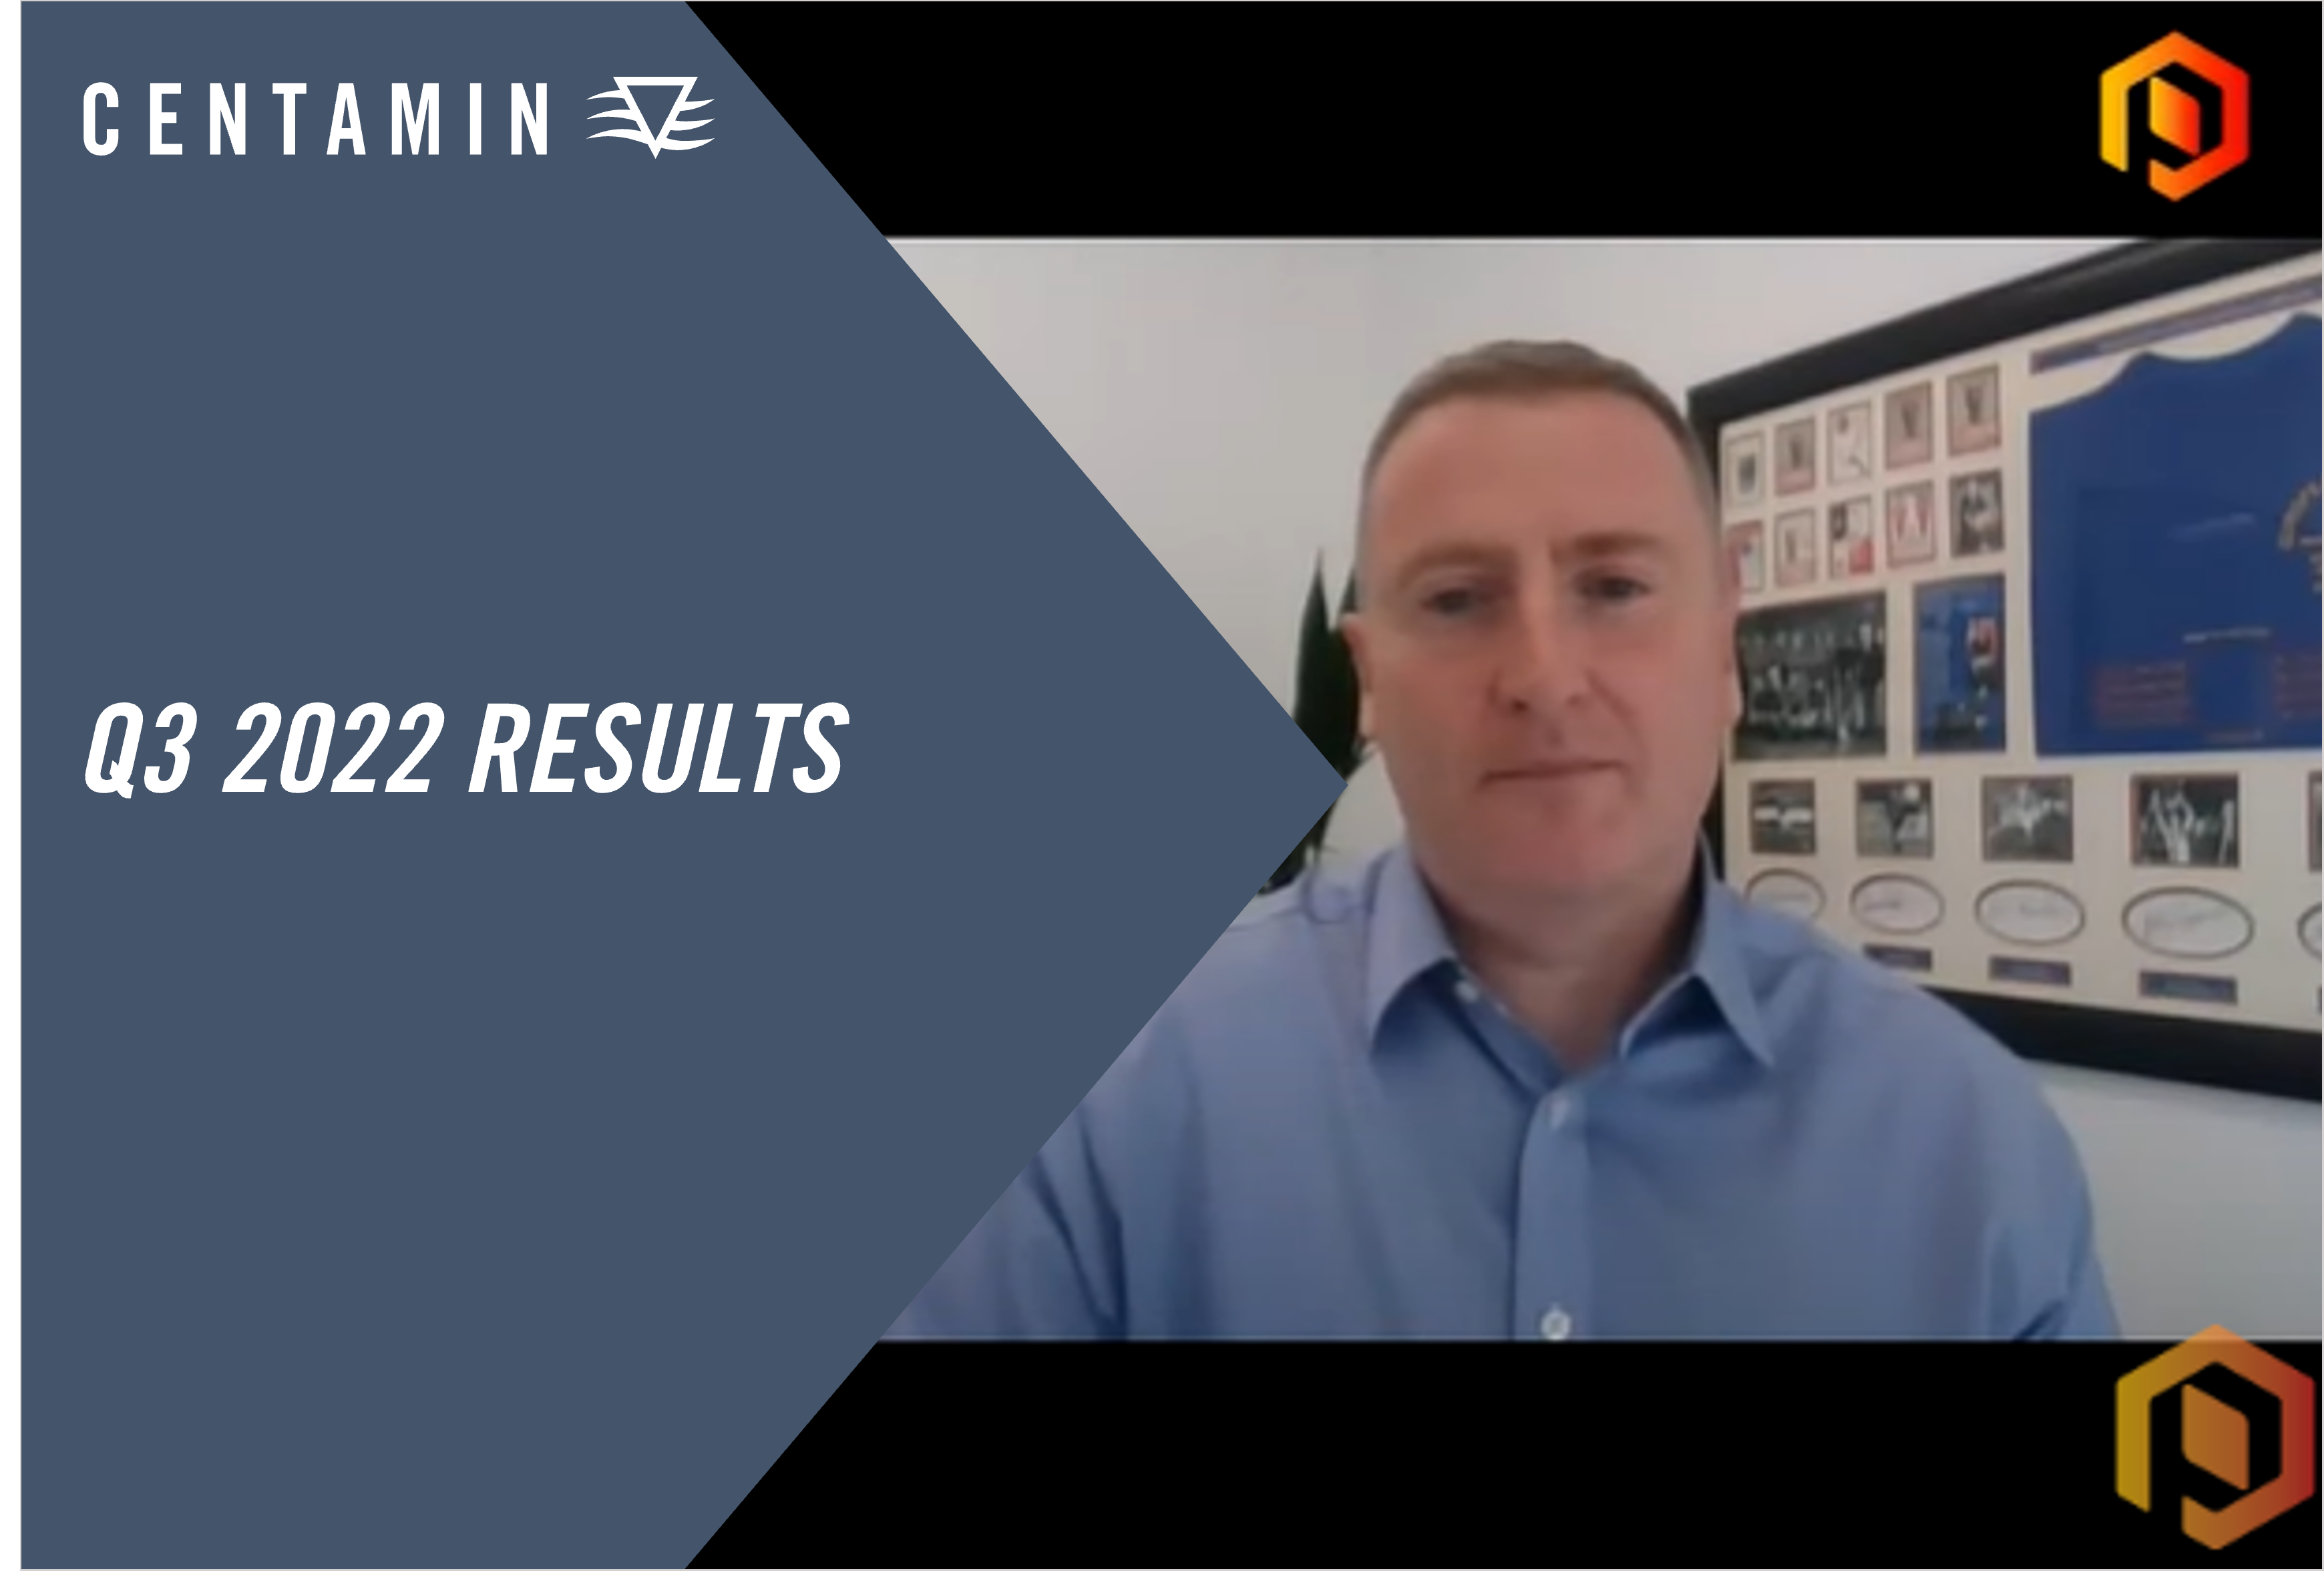 Proactive Investor - Martin Horgan on Centamin plc's Q3 2022 Results